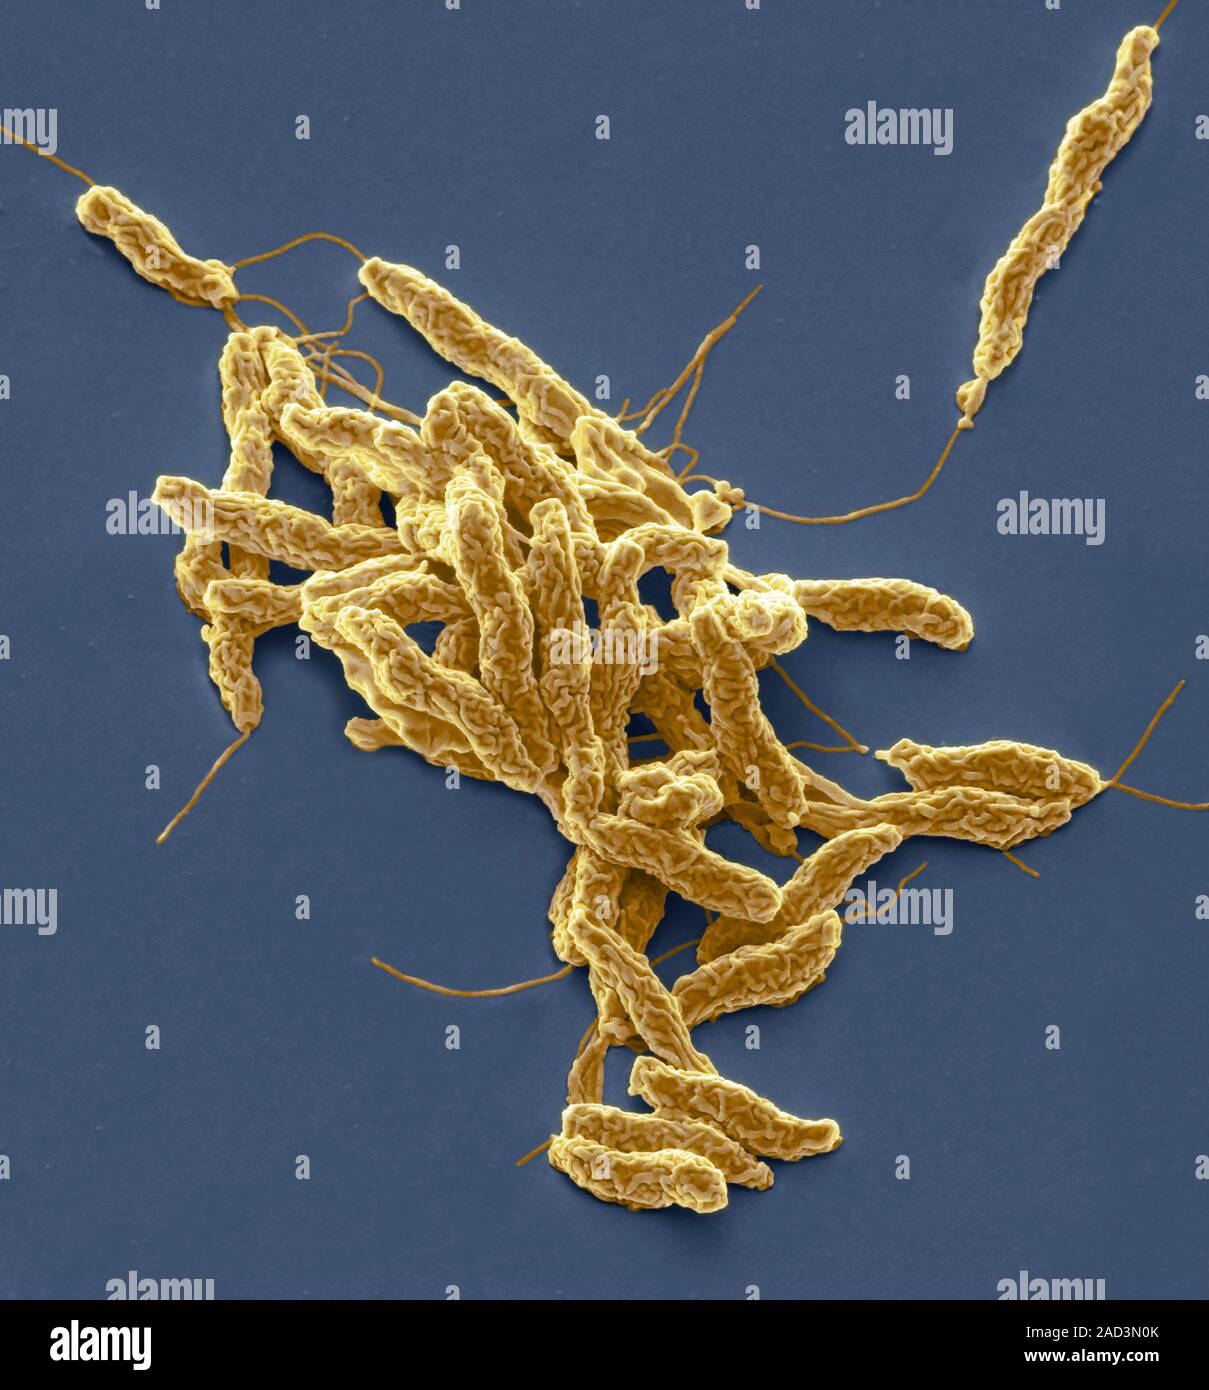 La Bacteria Campylobacter Jejuni Color An Lisis Micrograf A De